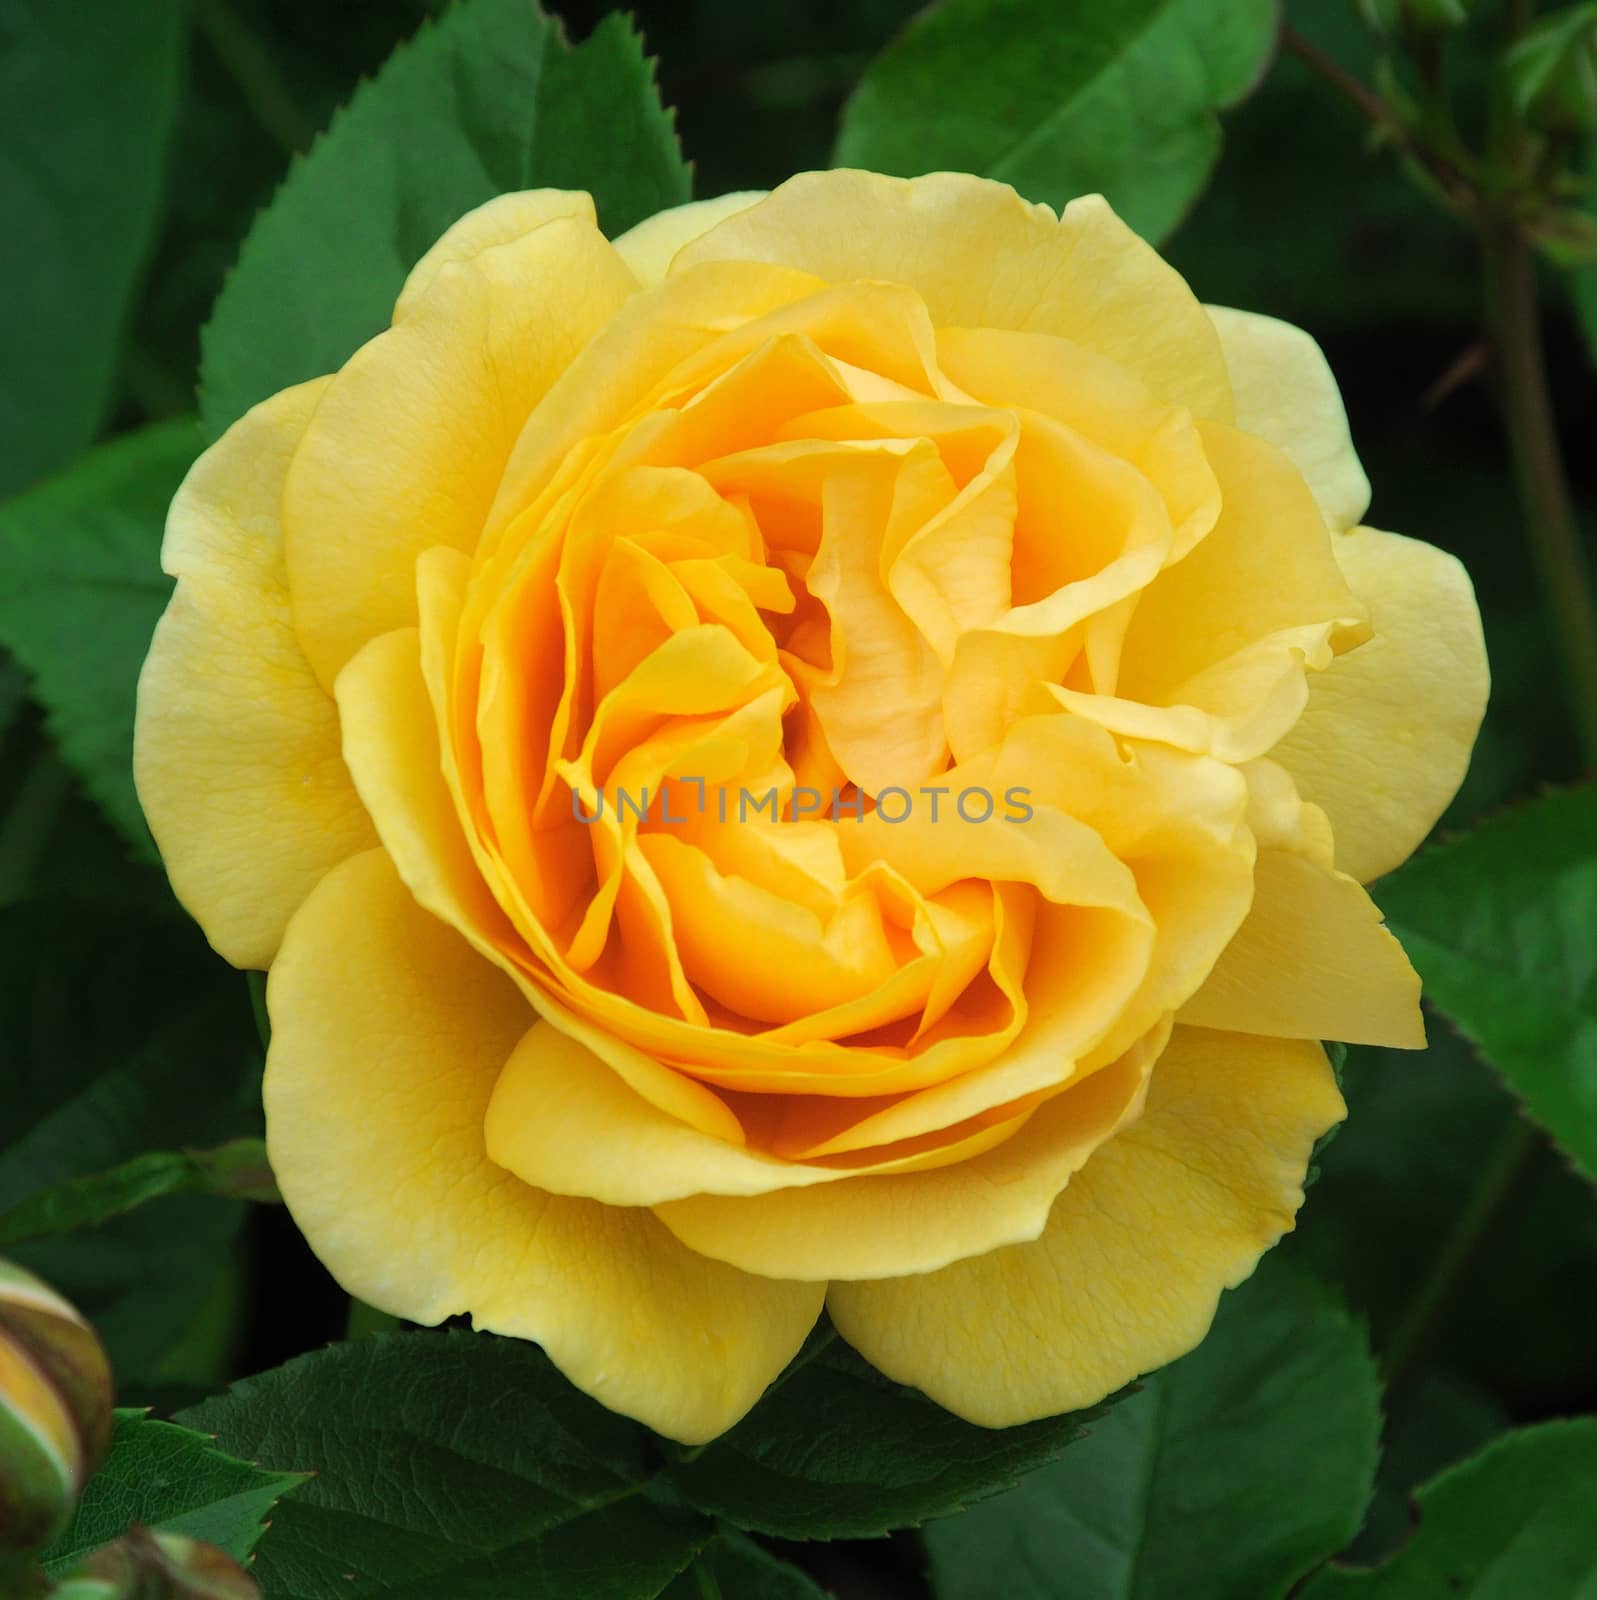 

; Golden Celebration. A lovely full petalled summer rose.